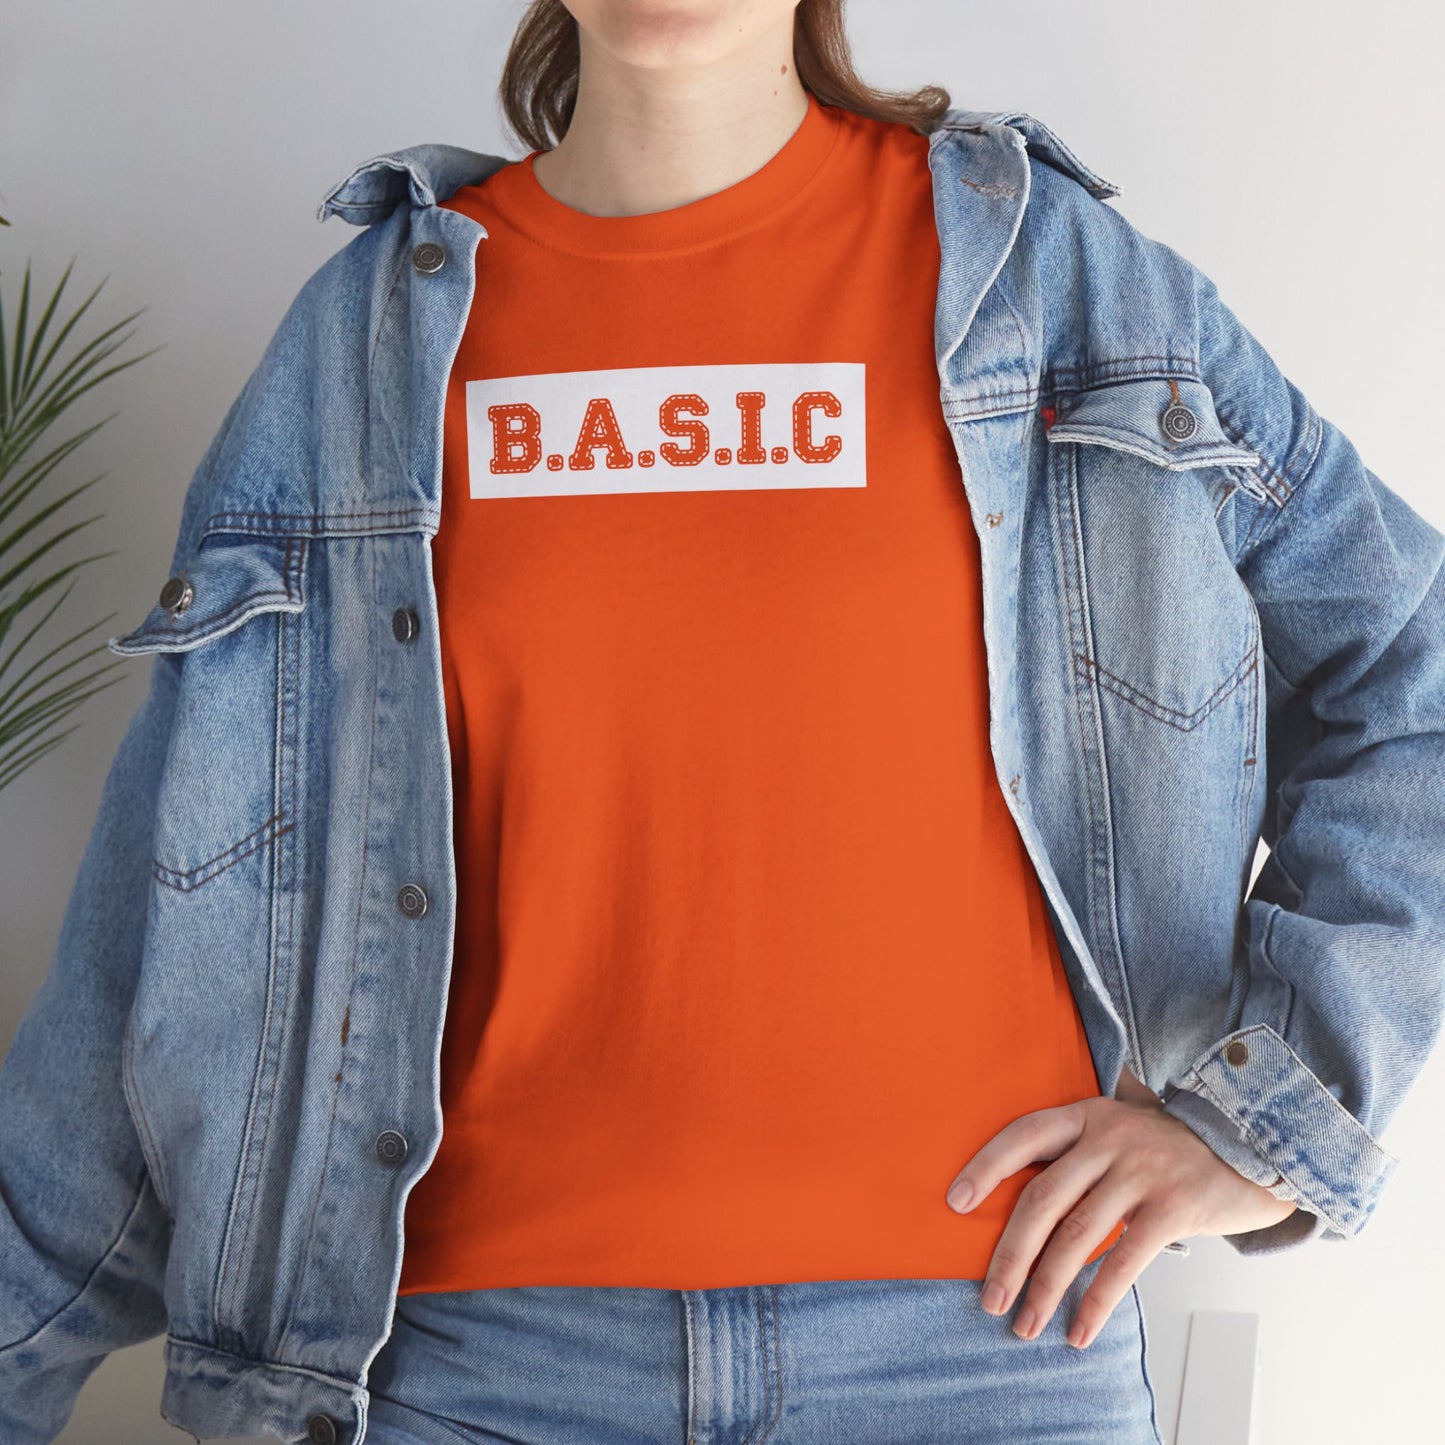 Unisex B.A.S.I.C "Stitched White Logo" T Shirt